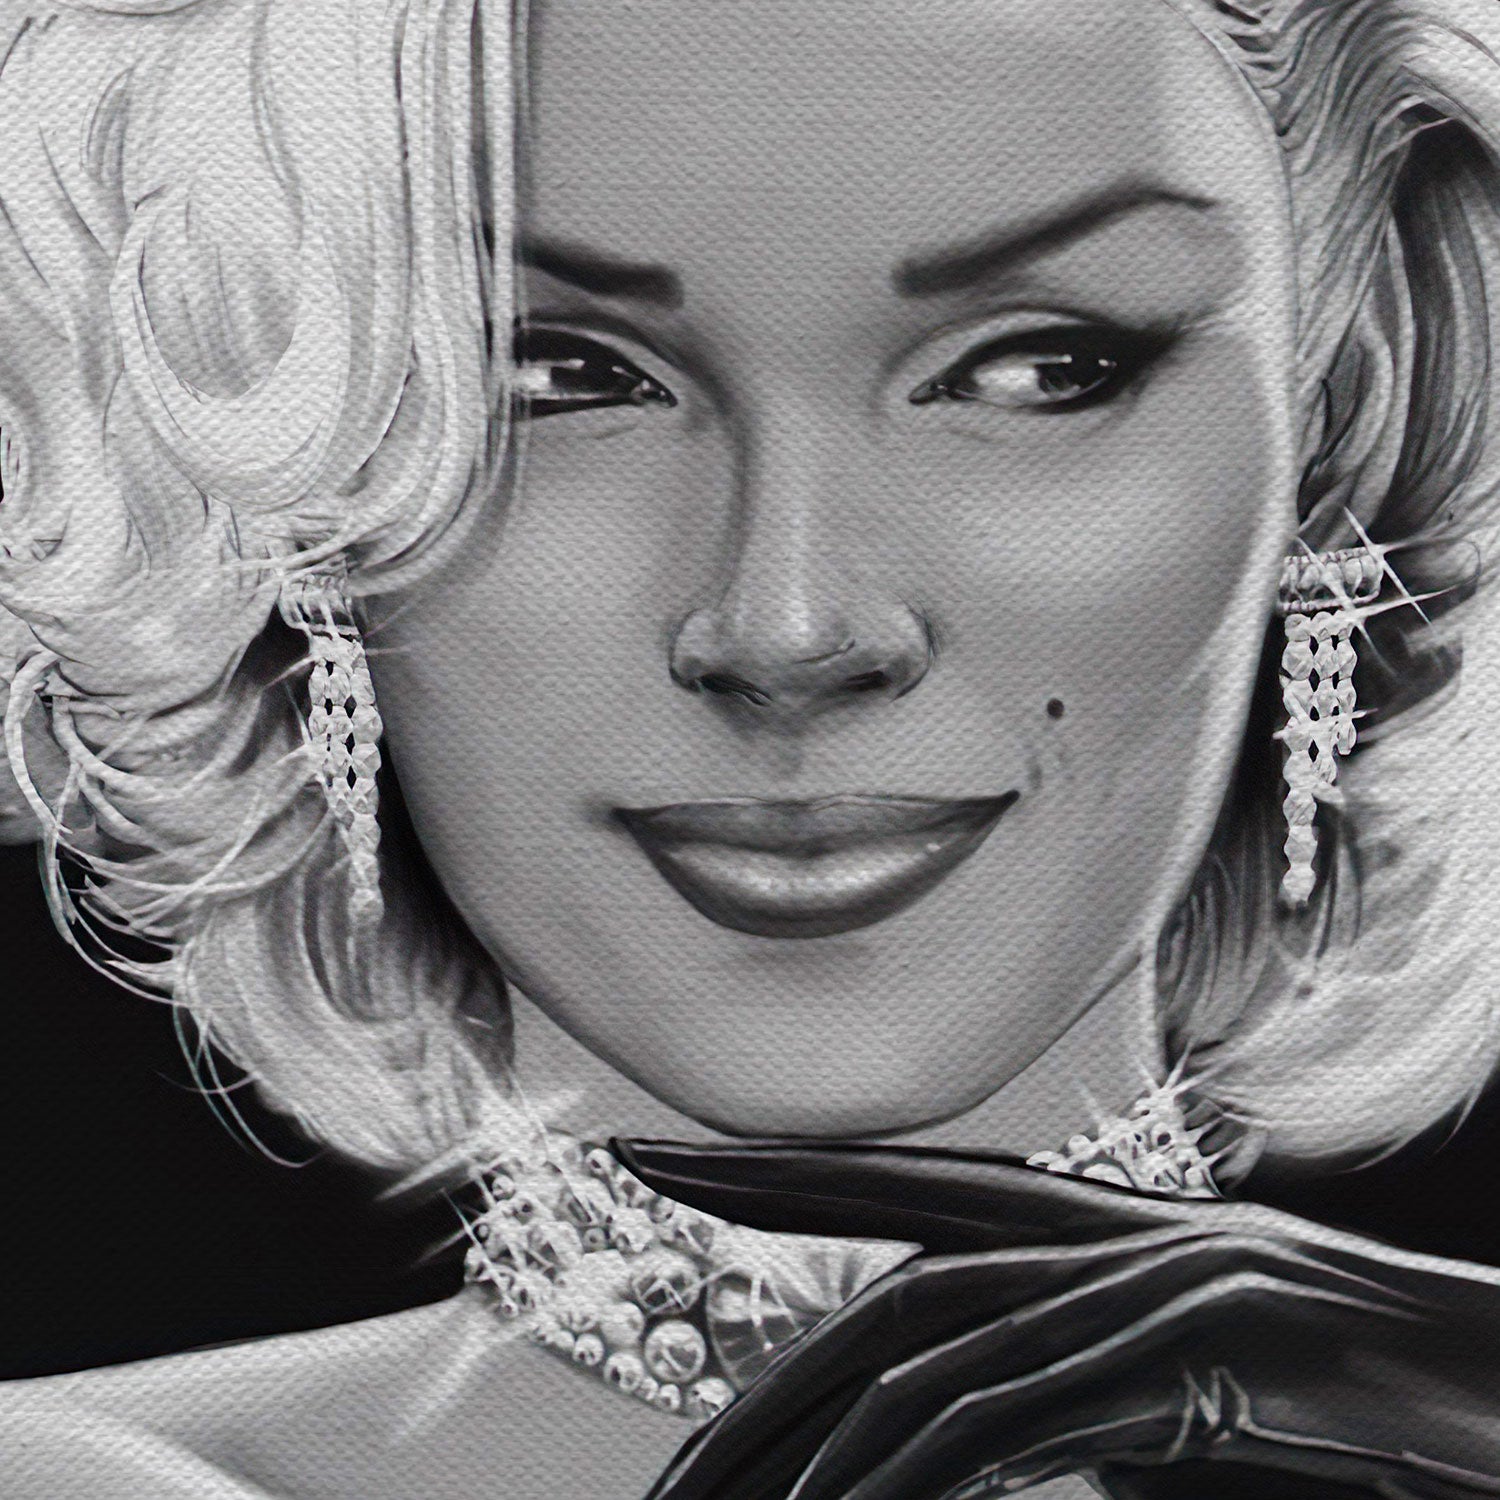 Marilyn Monroe In Black Dress Wall Art Canvas